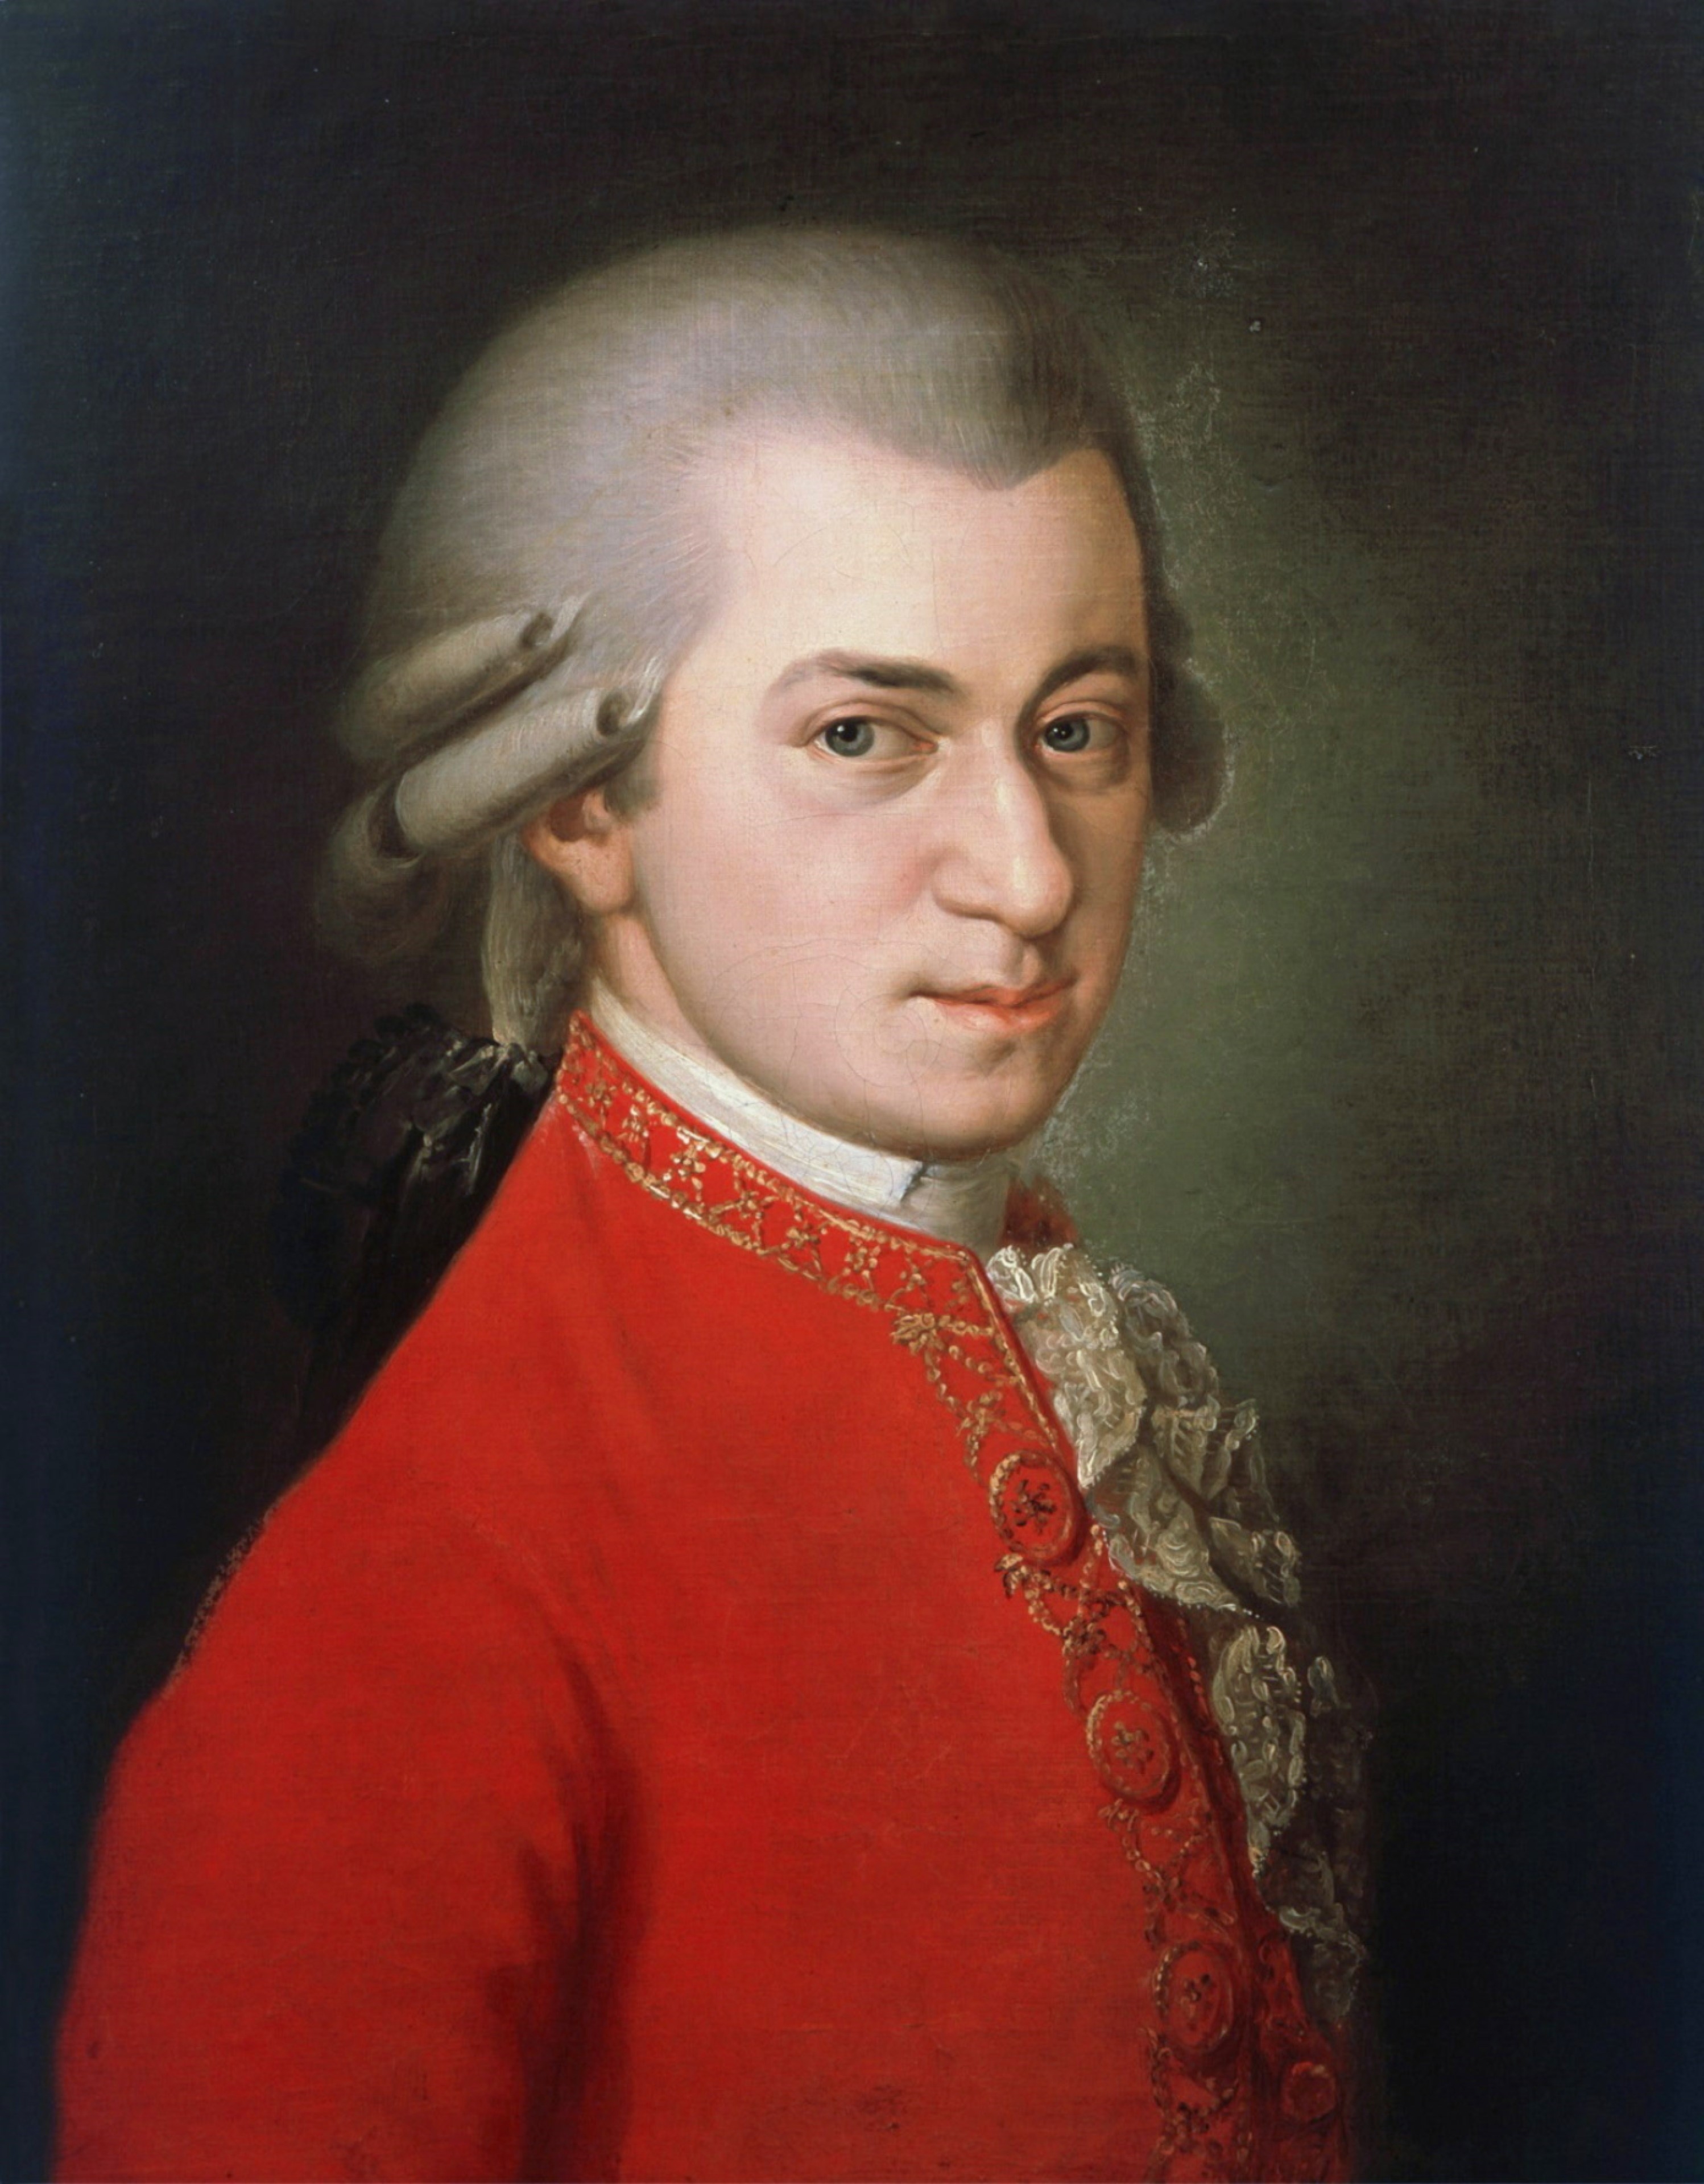 auteur Wolfgang Amadeus Mozart de la citation Néanmoins, les passions, qu'elles soient violentes ou non, ne devraient jamais s'exprimer pour atteindre le point de dégoût.